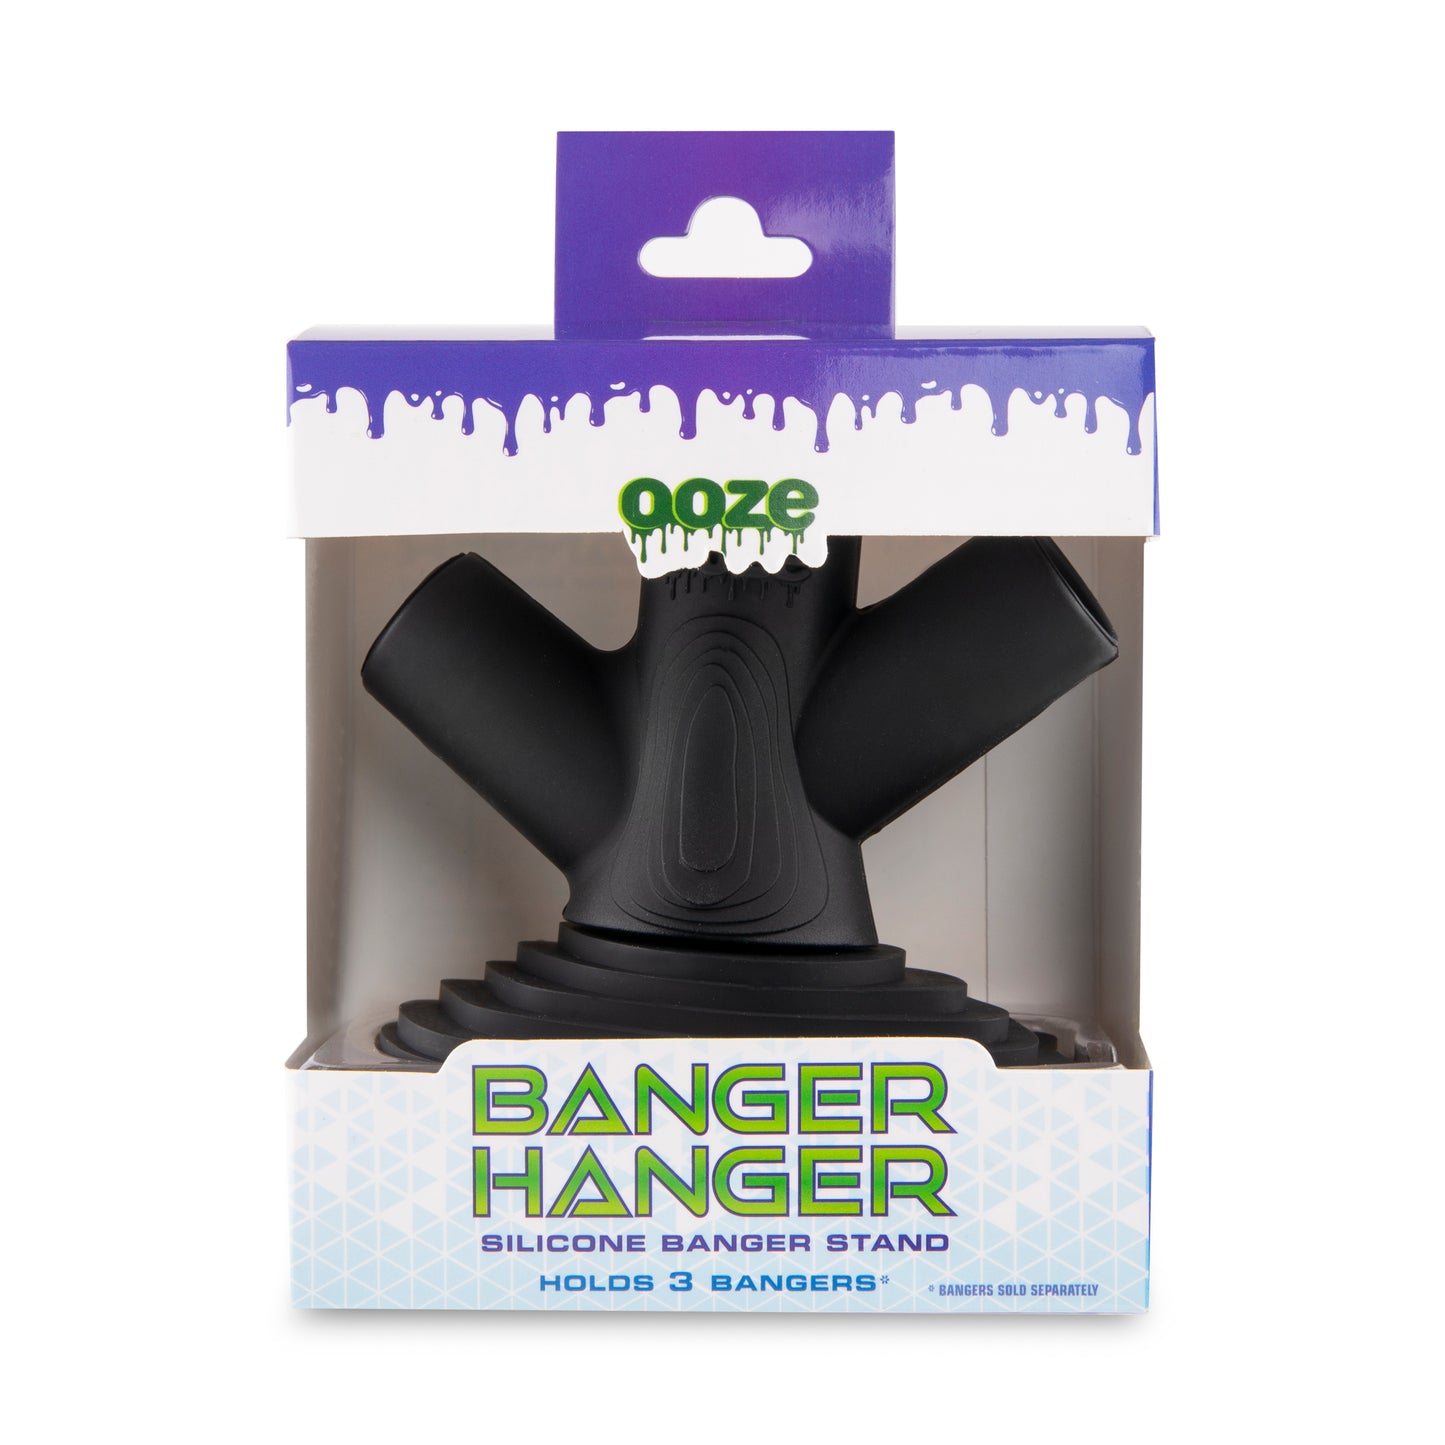 Ooze Banger Hanger Silicone Banger Stand - Panther Black